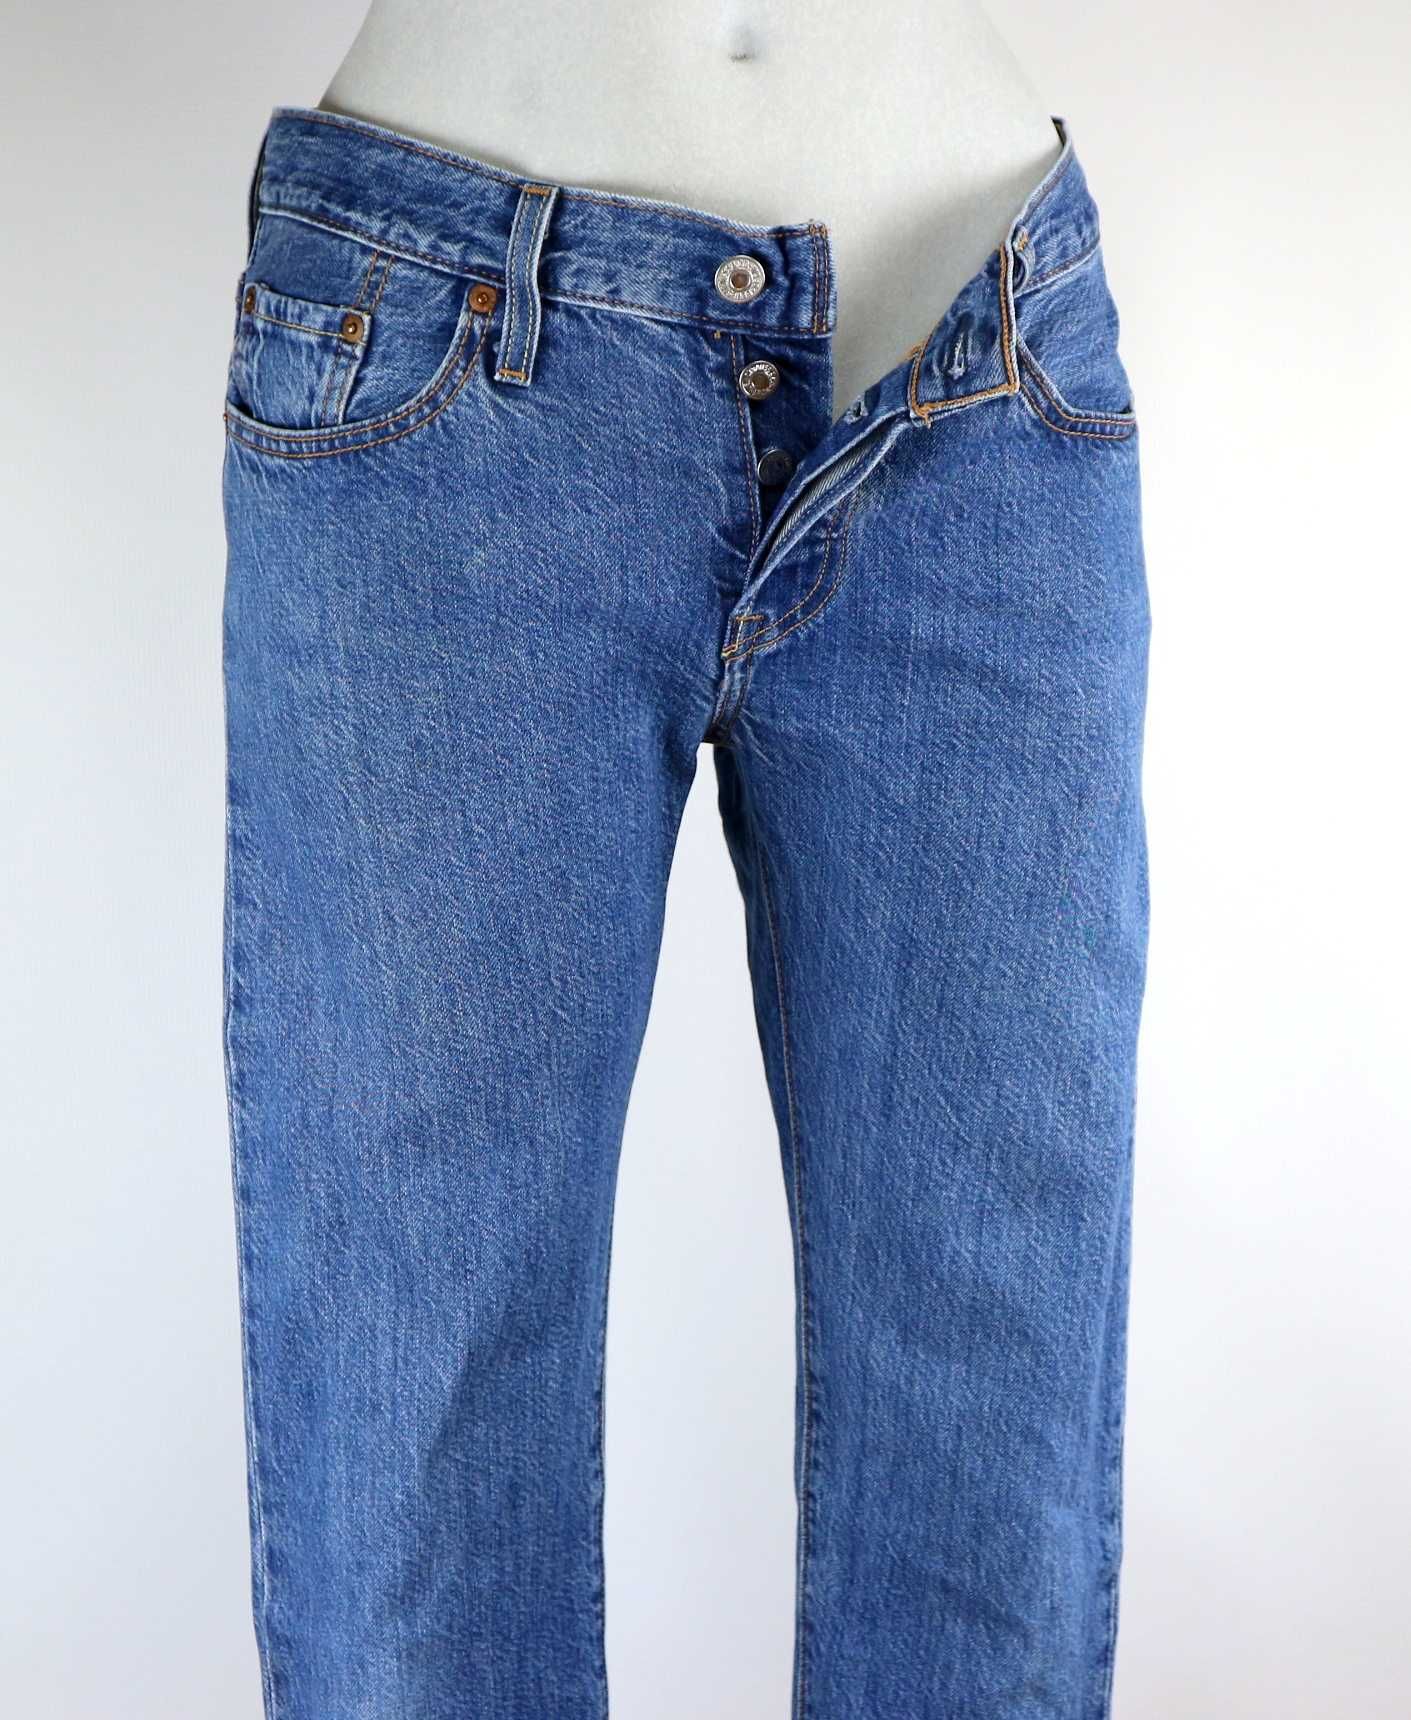 Levis 501 CT spodnie jeansy 7/8 boyfriend W26 L34 pas 2 x 40 cm